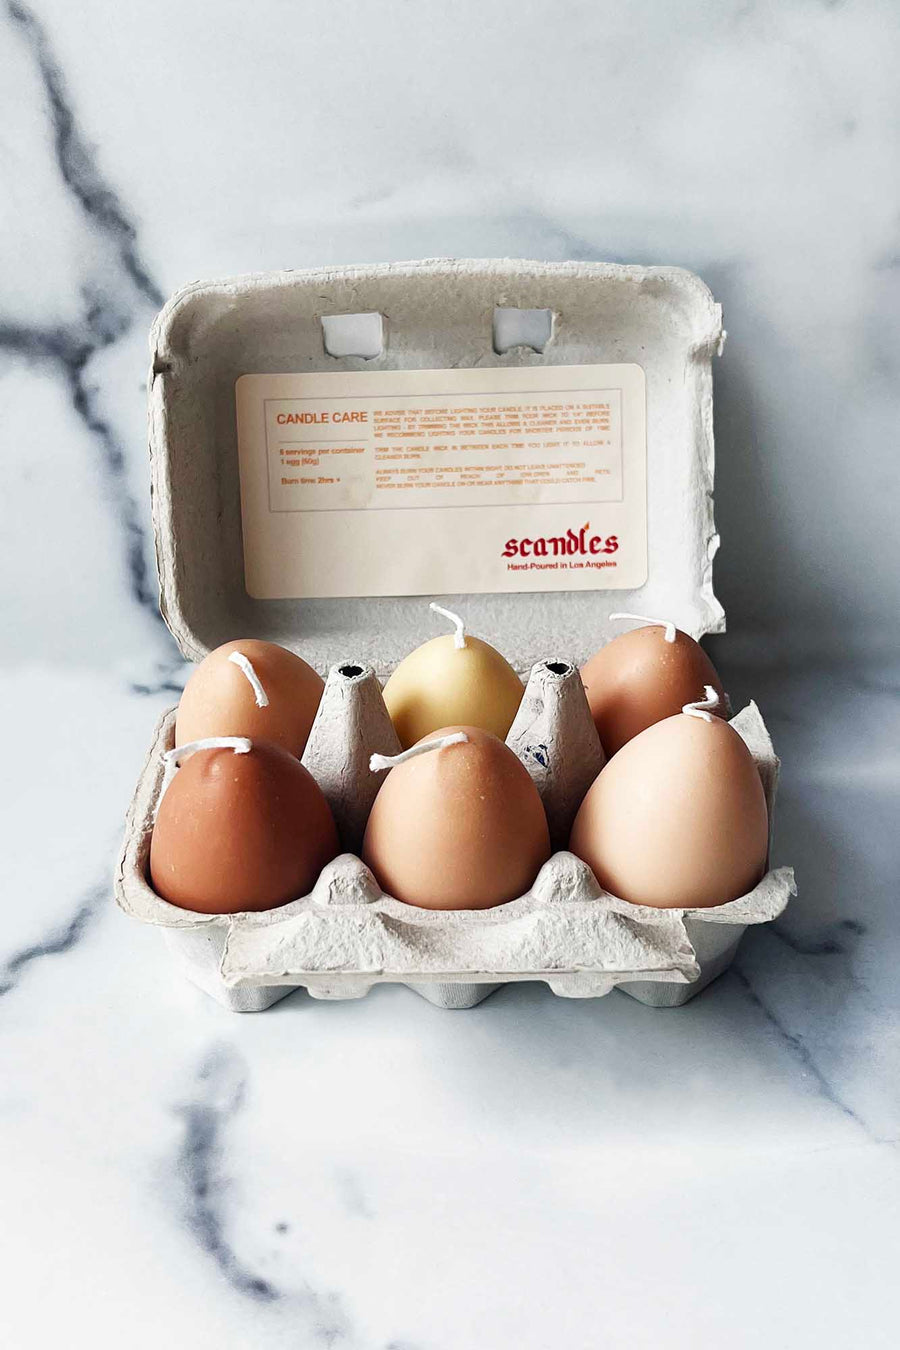 Scandles Egg Candle Carton